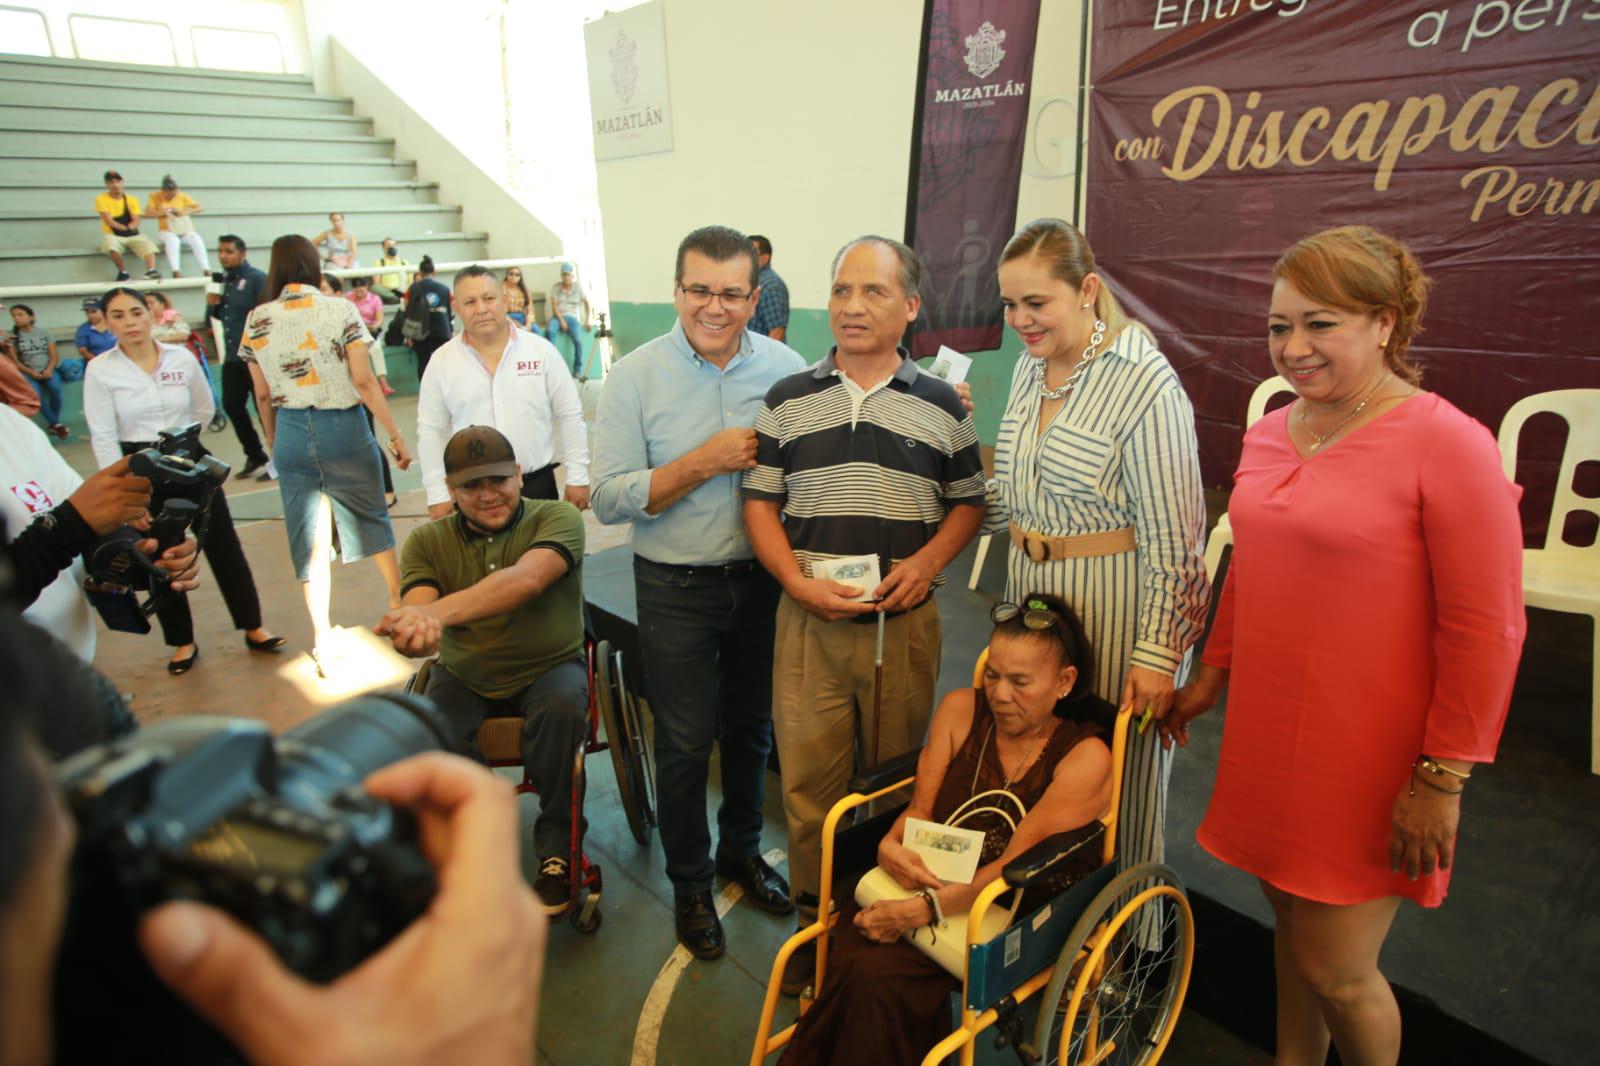 $!Entrega DIF Mazatlán apoyo económico a 500 personas con discapacidad permanente